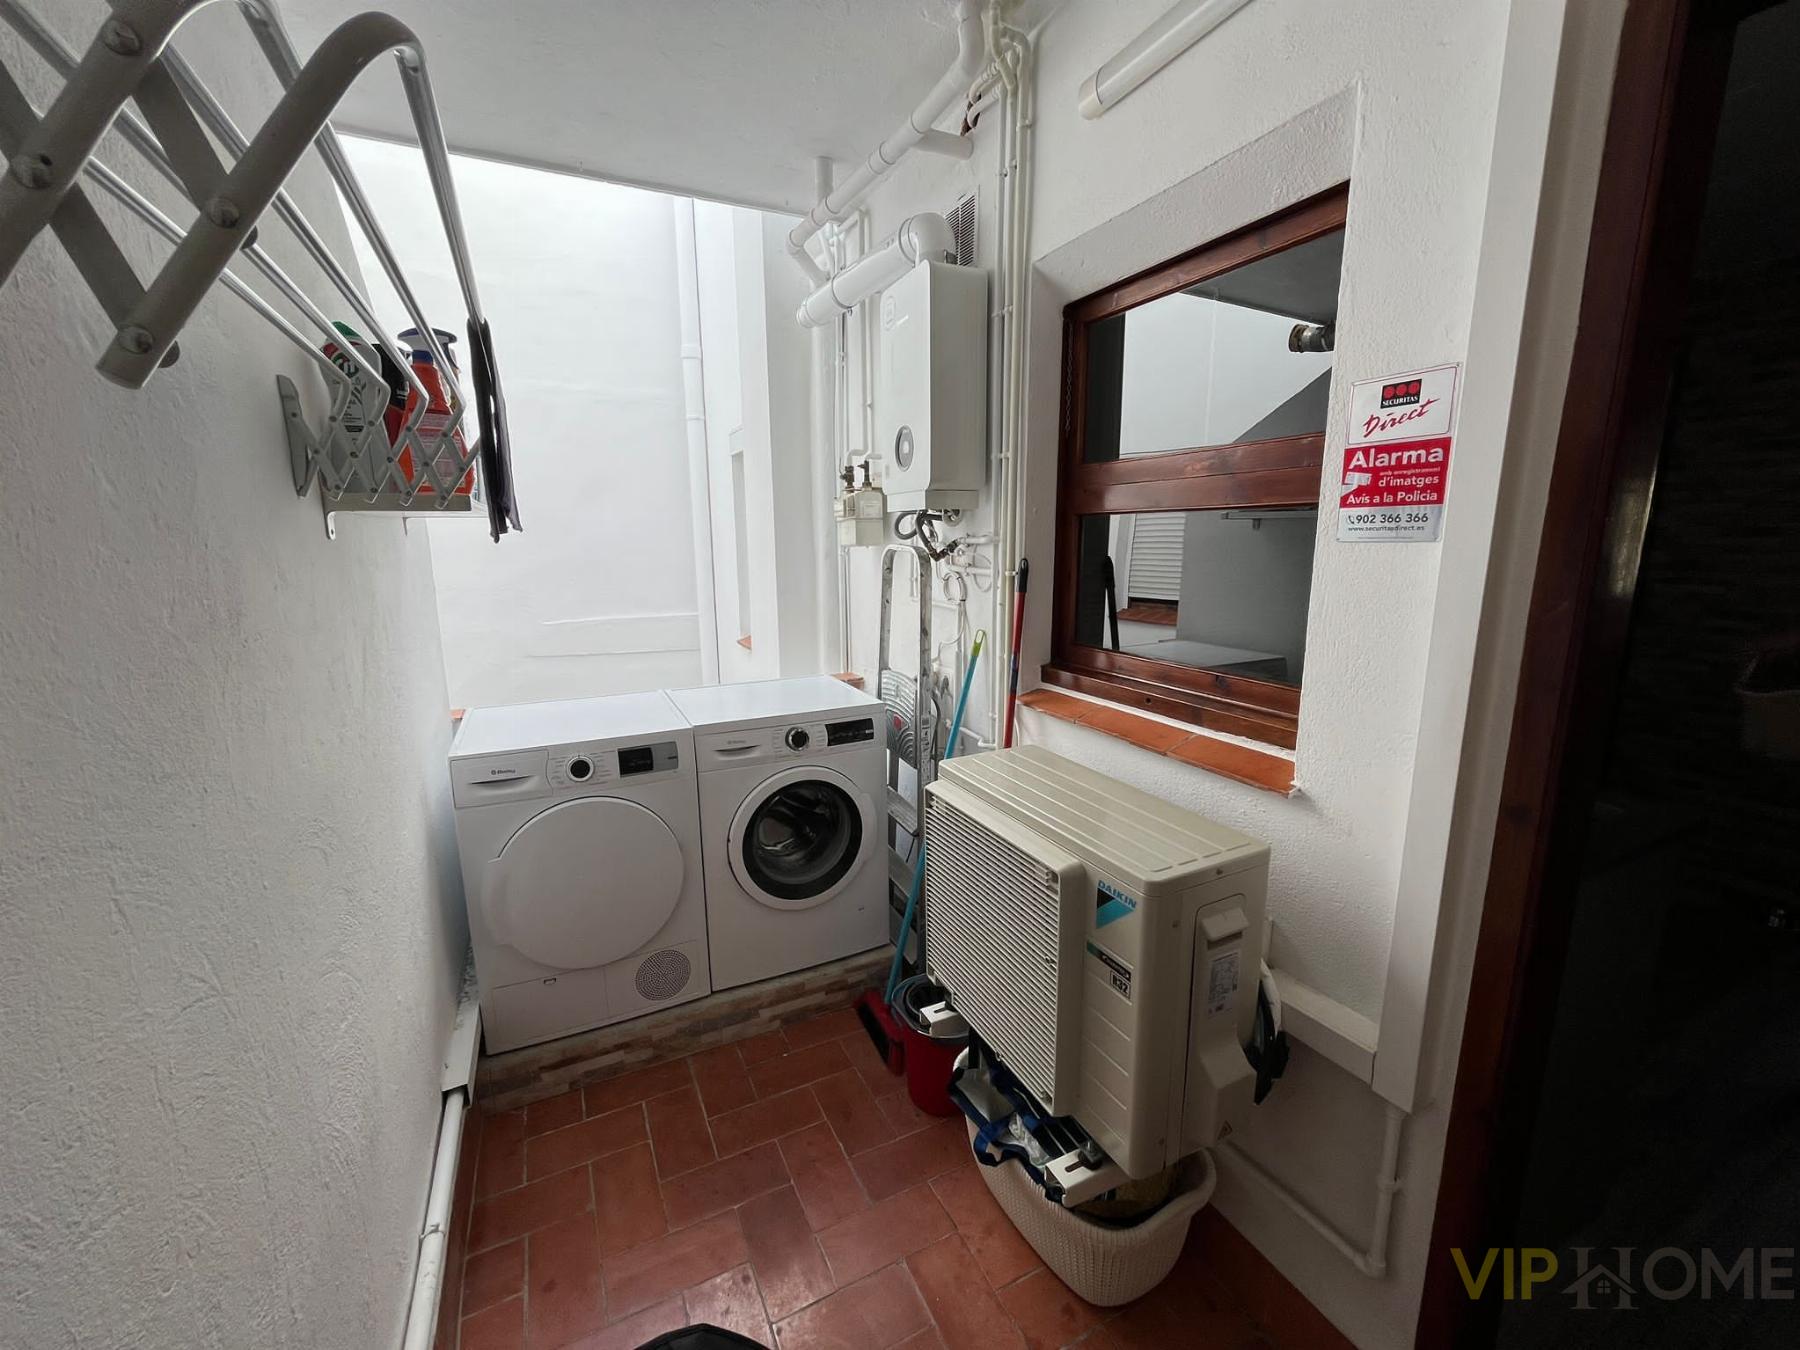 Vente de appartement dans Sant Feliu de Guíxols